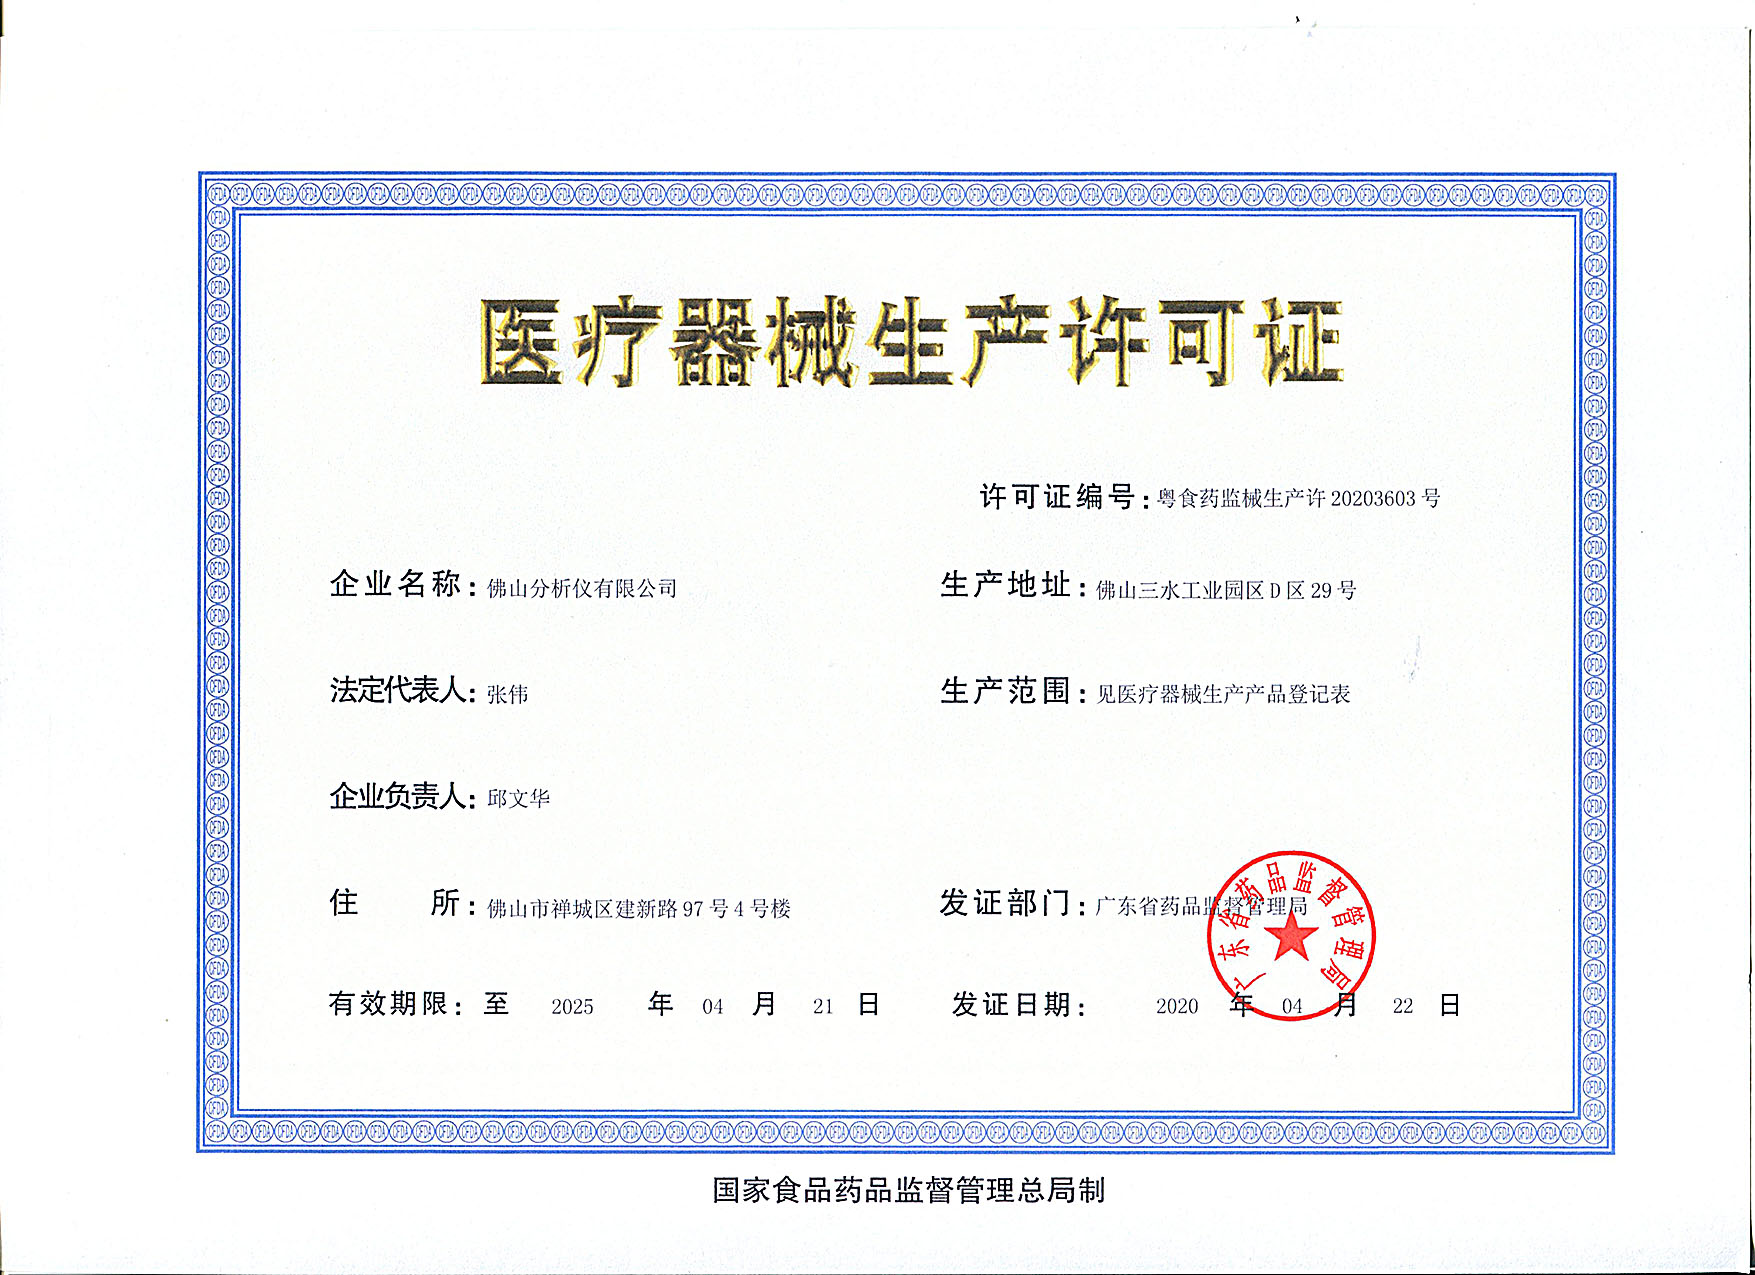 Production Enterprise License of Medical Instrument